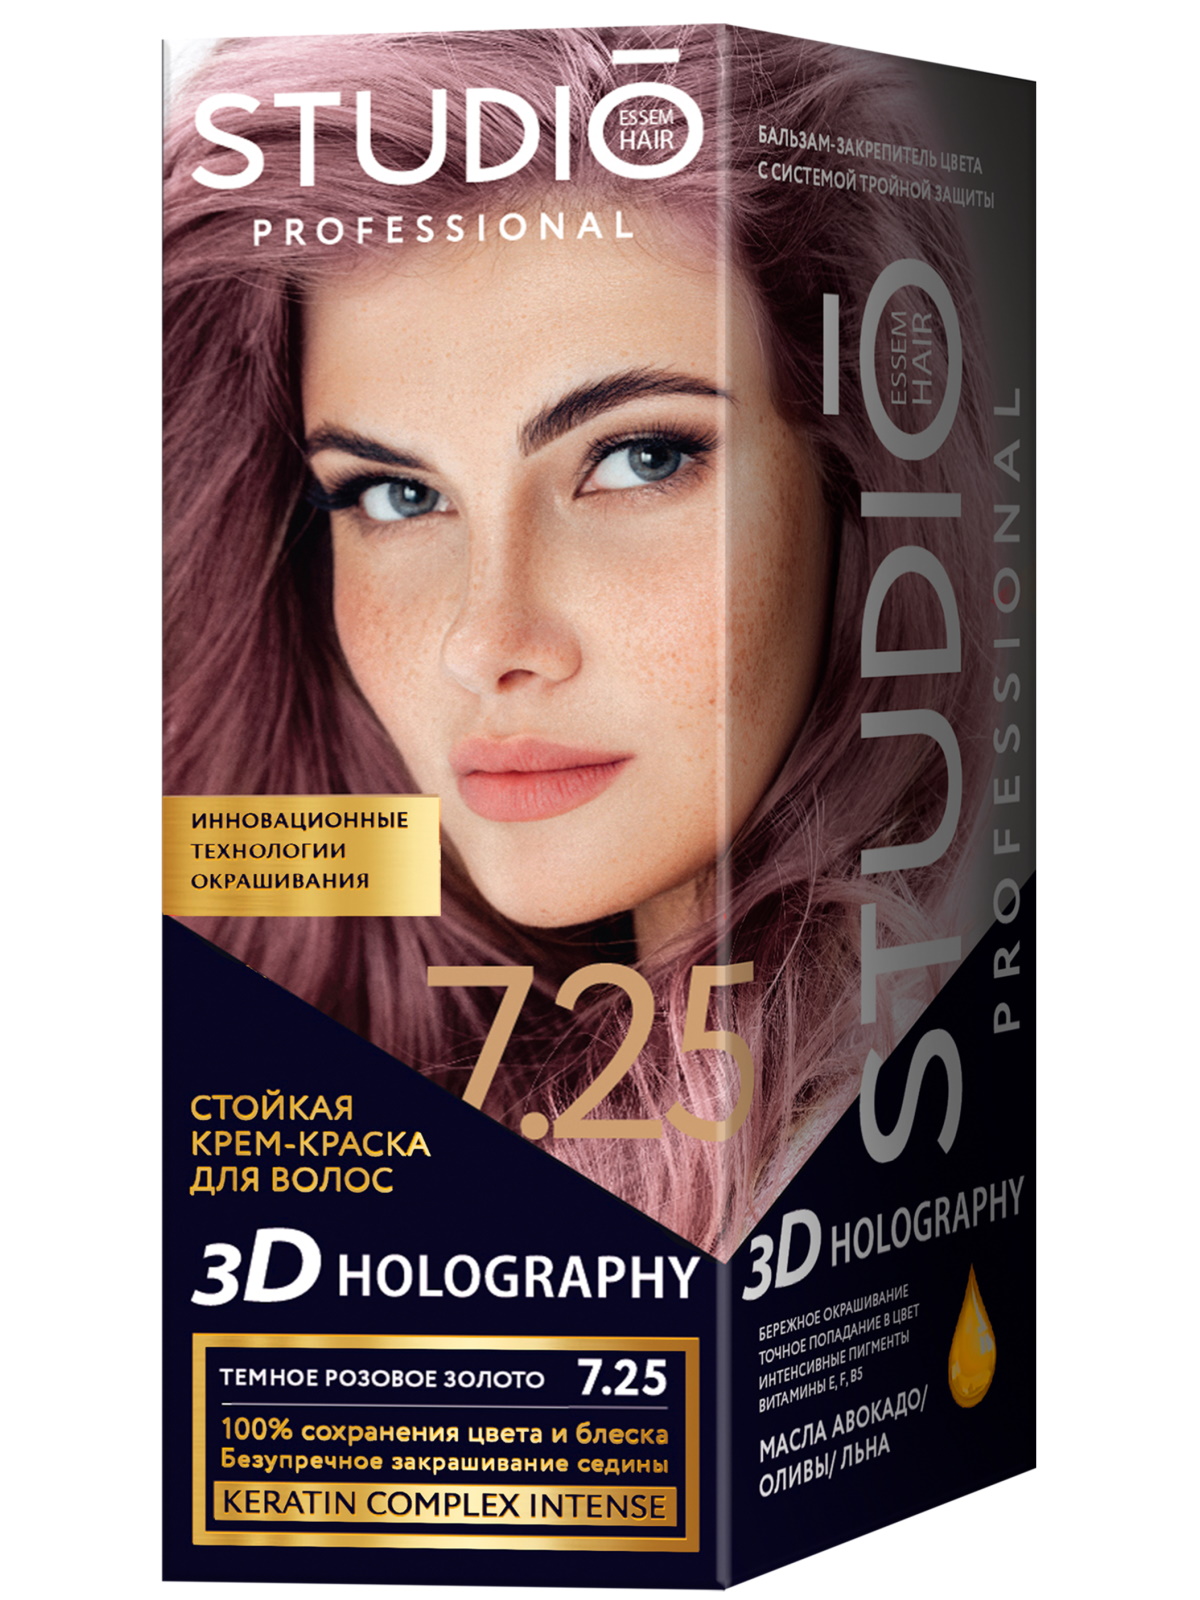 Комплект 3D HOLOGRAPHY STUDIO PROFESSIONAL 7.25 темное розовое золото 2*50+15 мл стойкая крем краска для волос studio professional 3d holography тон 4 4 мокко